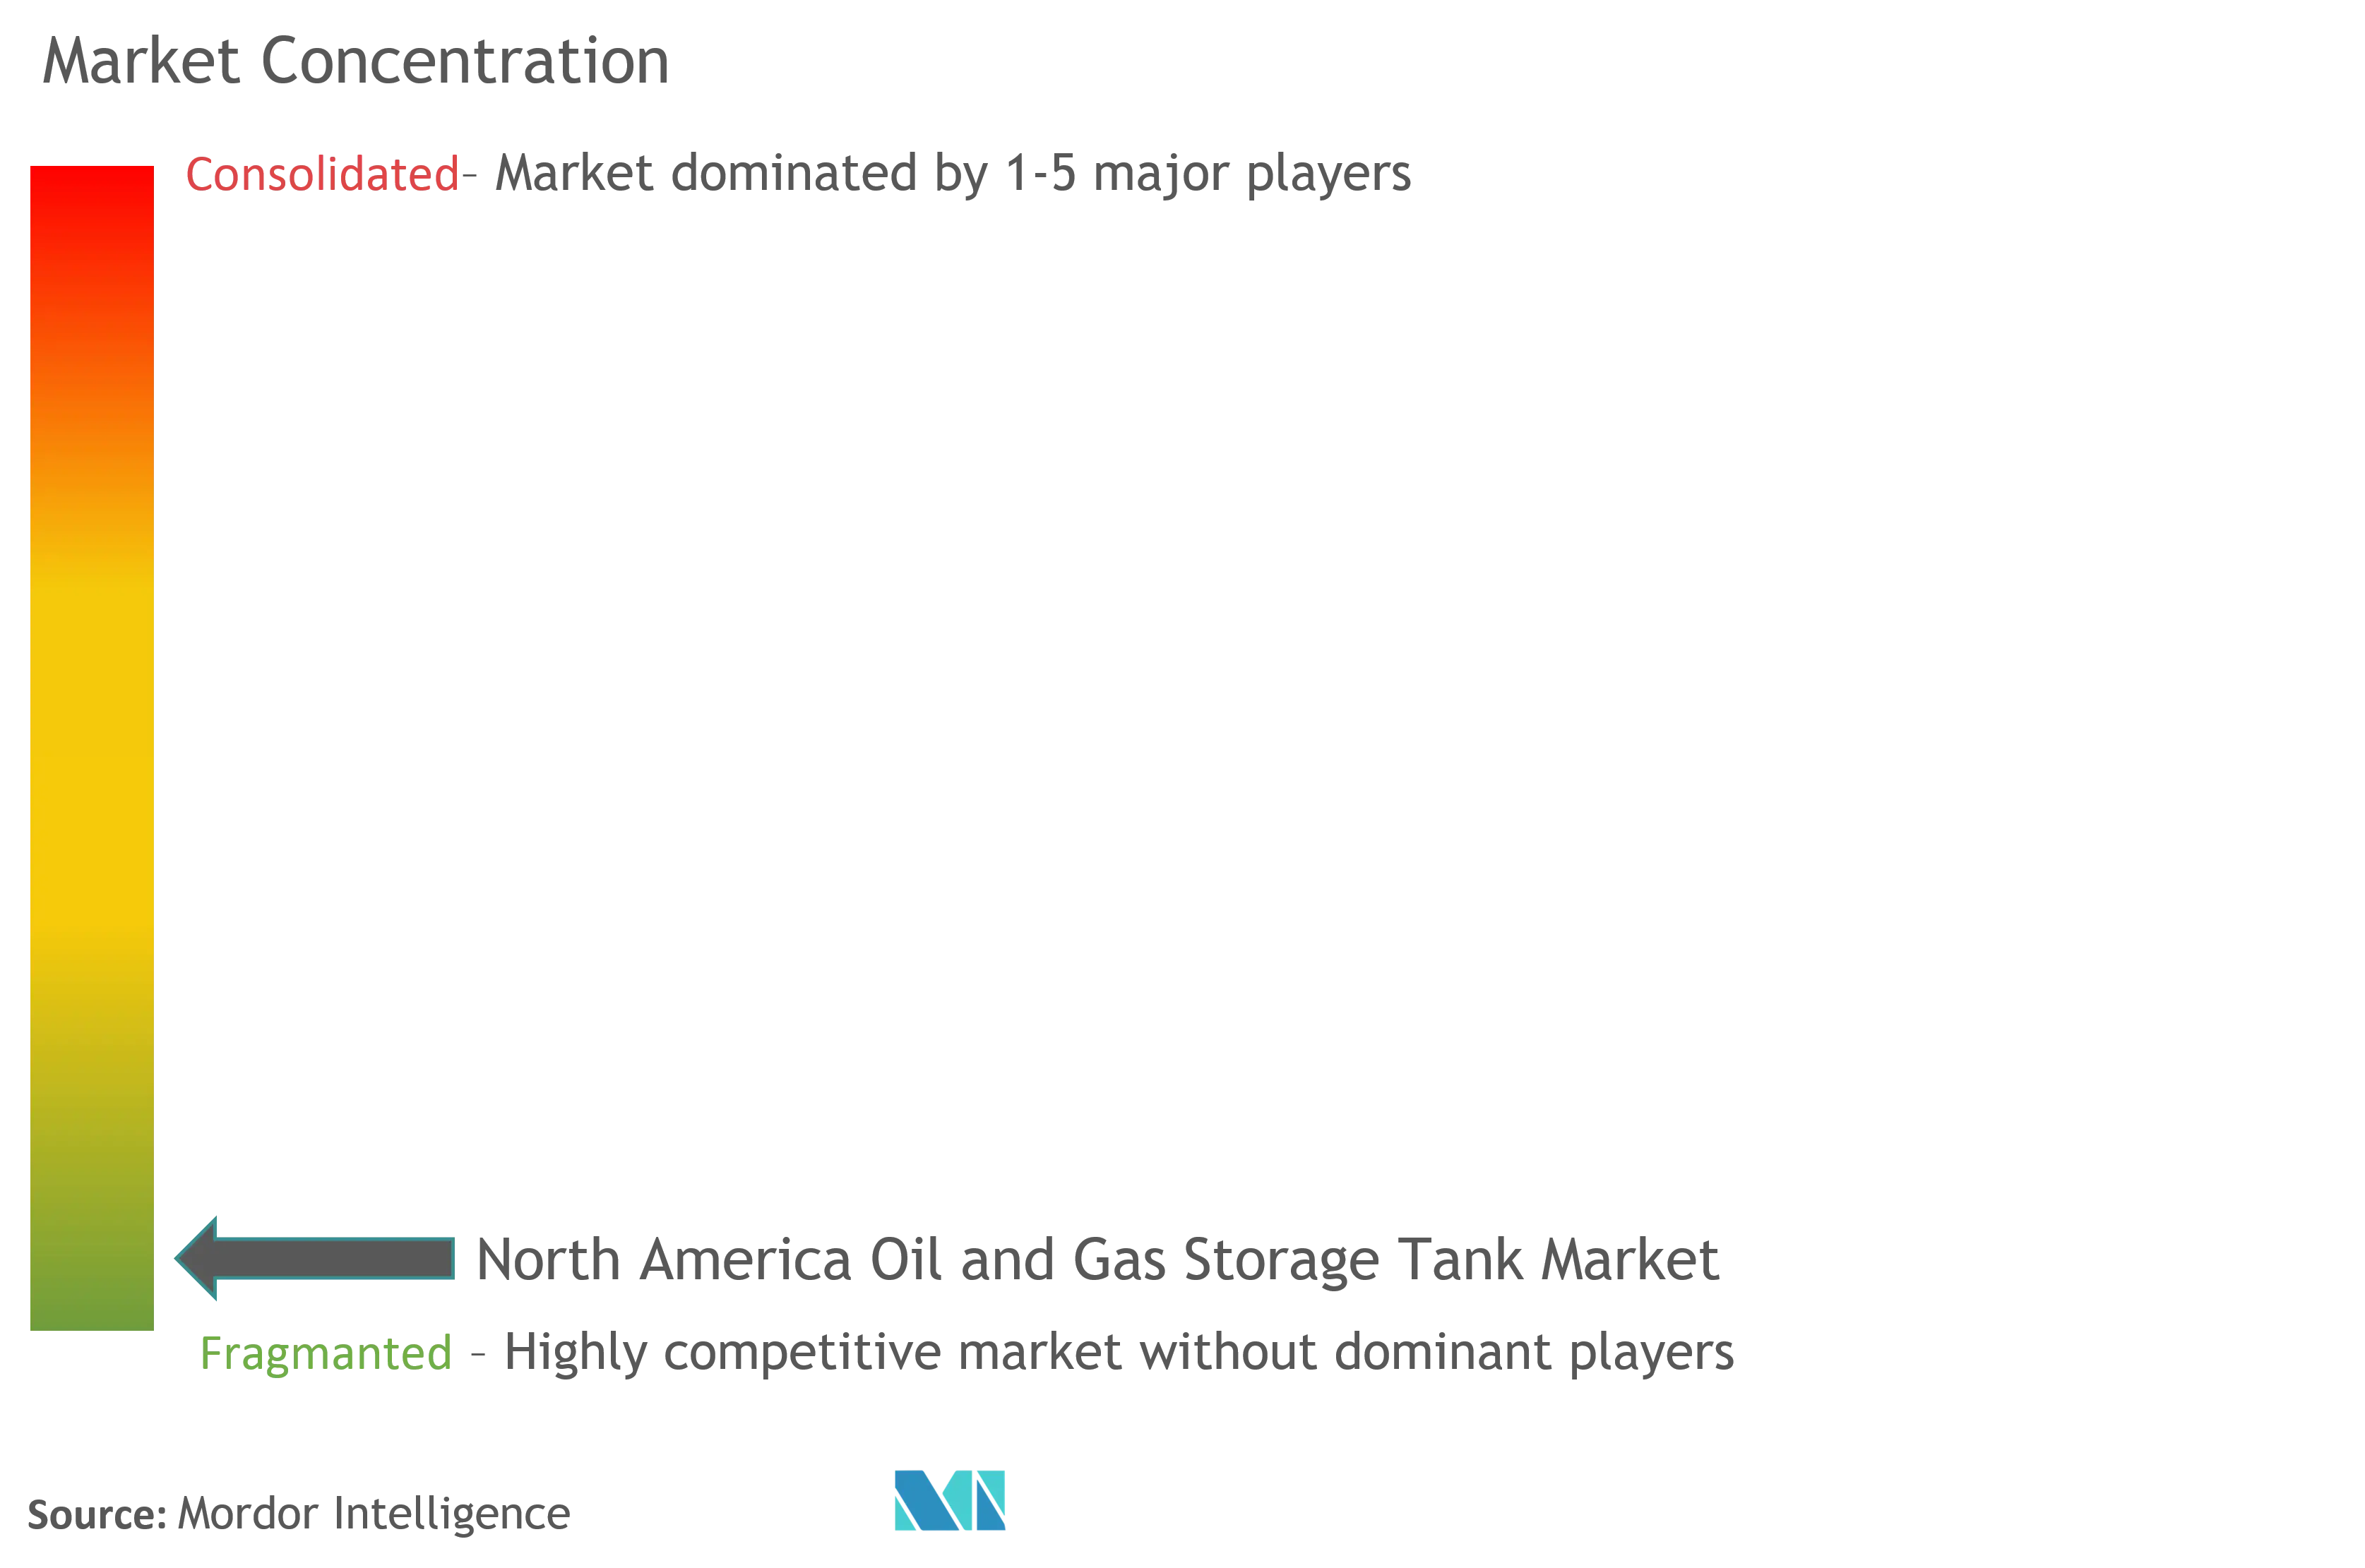 北米石油・ガス貯蔵タンク市場の集中度